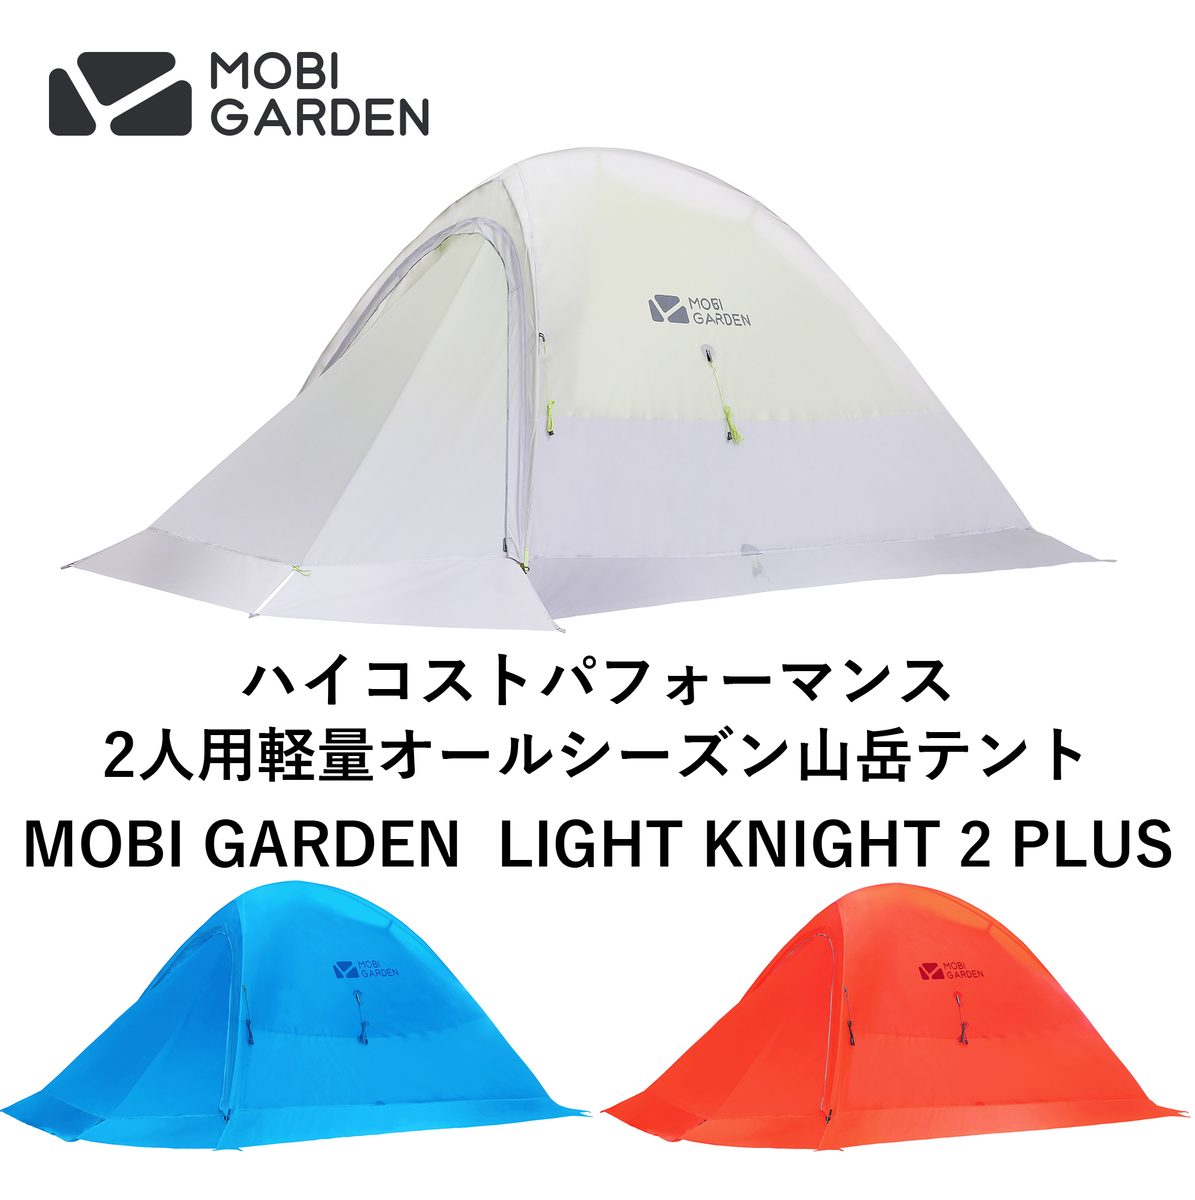 アウトドア テント/タープ 楽天市場】MOBI GARDEN モビ ガーデン LIGHT KNIGHT 1 PLUS ライト 